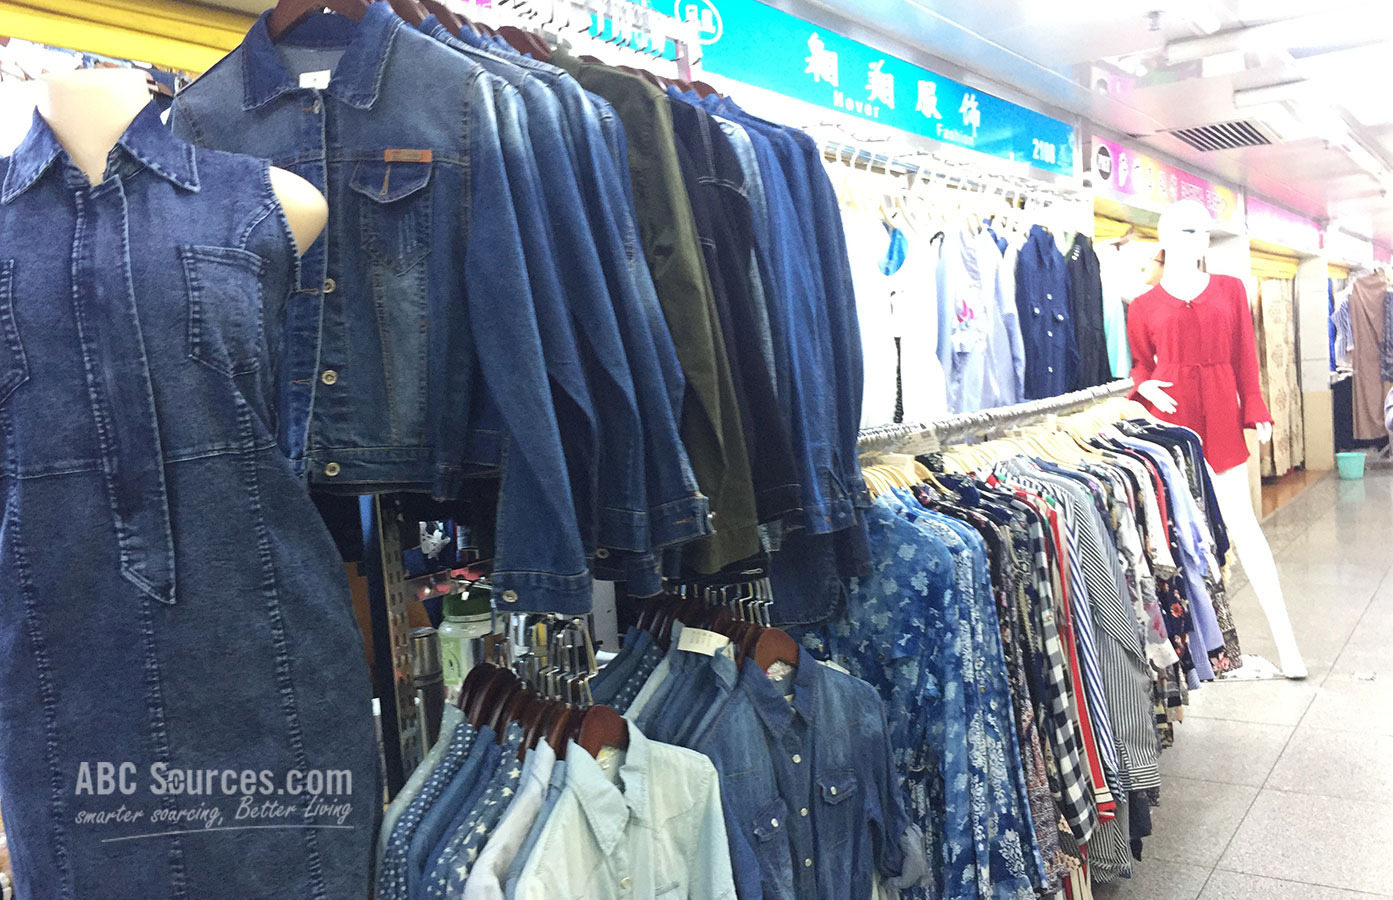 Guangzhou Liuhua Clothing Wholesale Market - Abc Sources